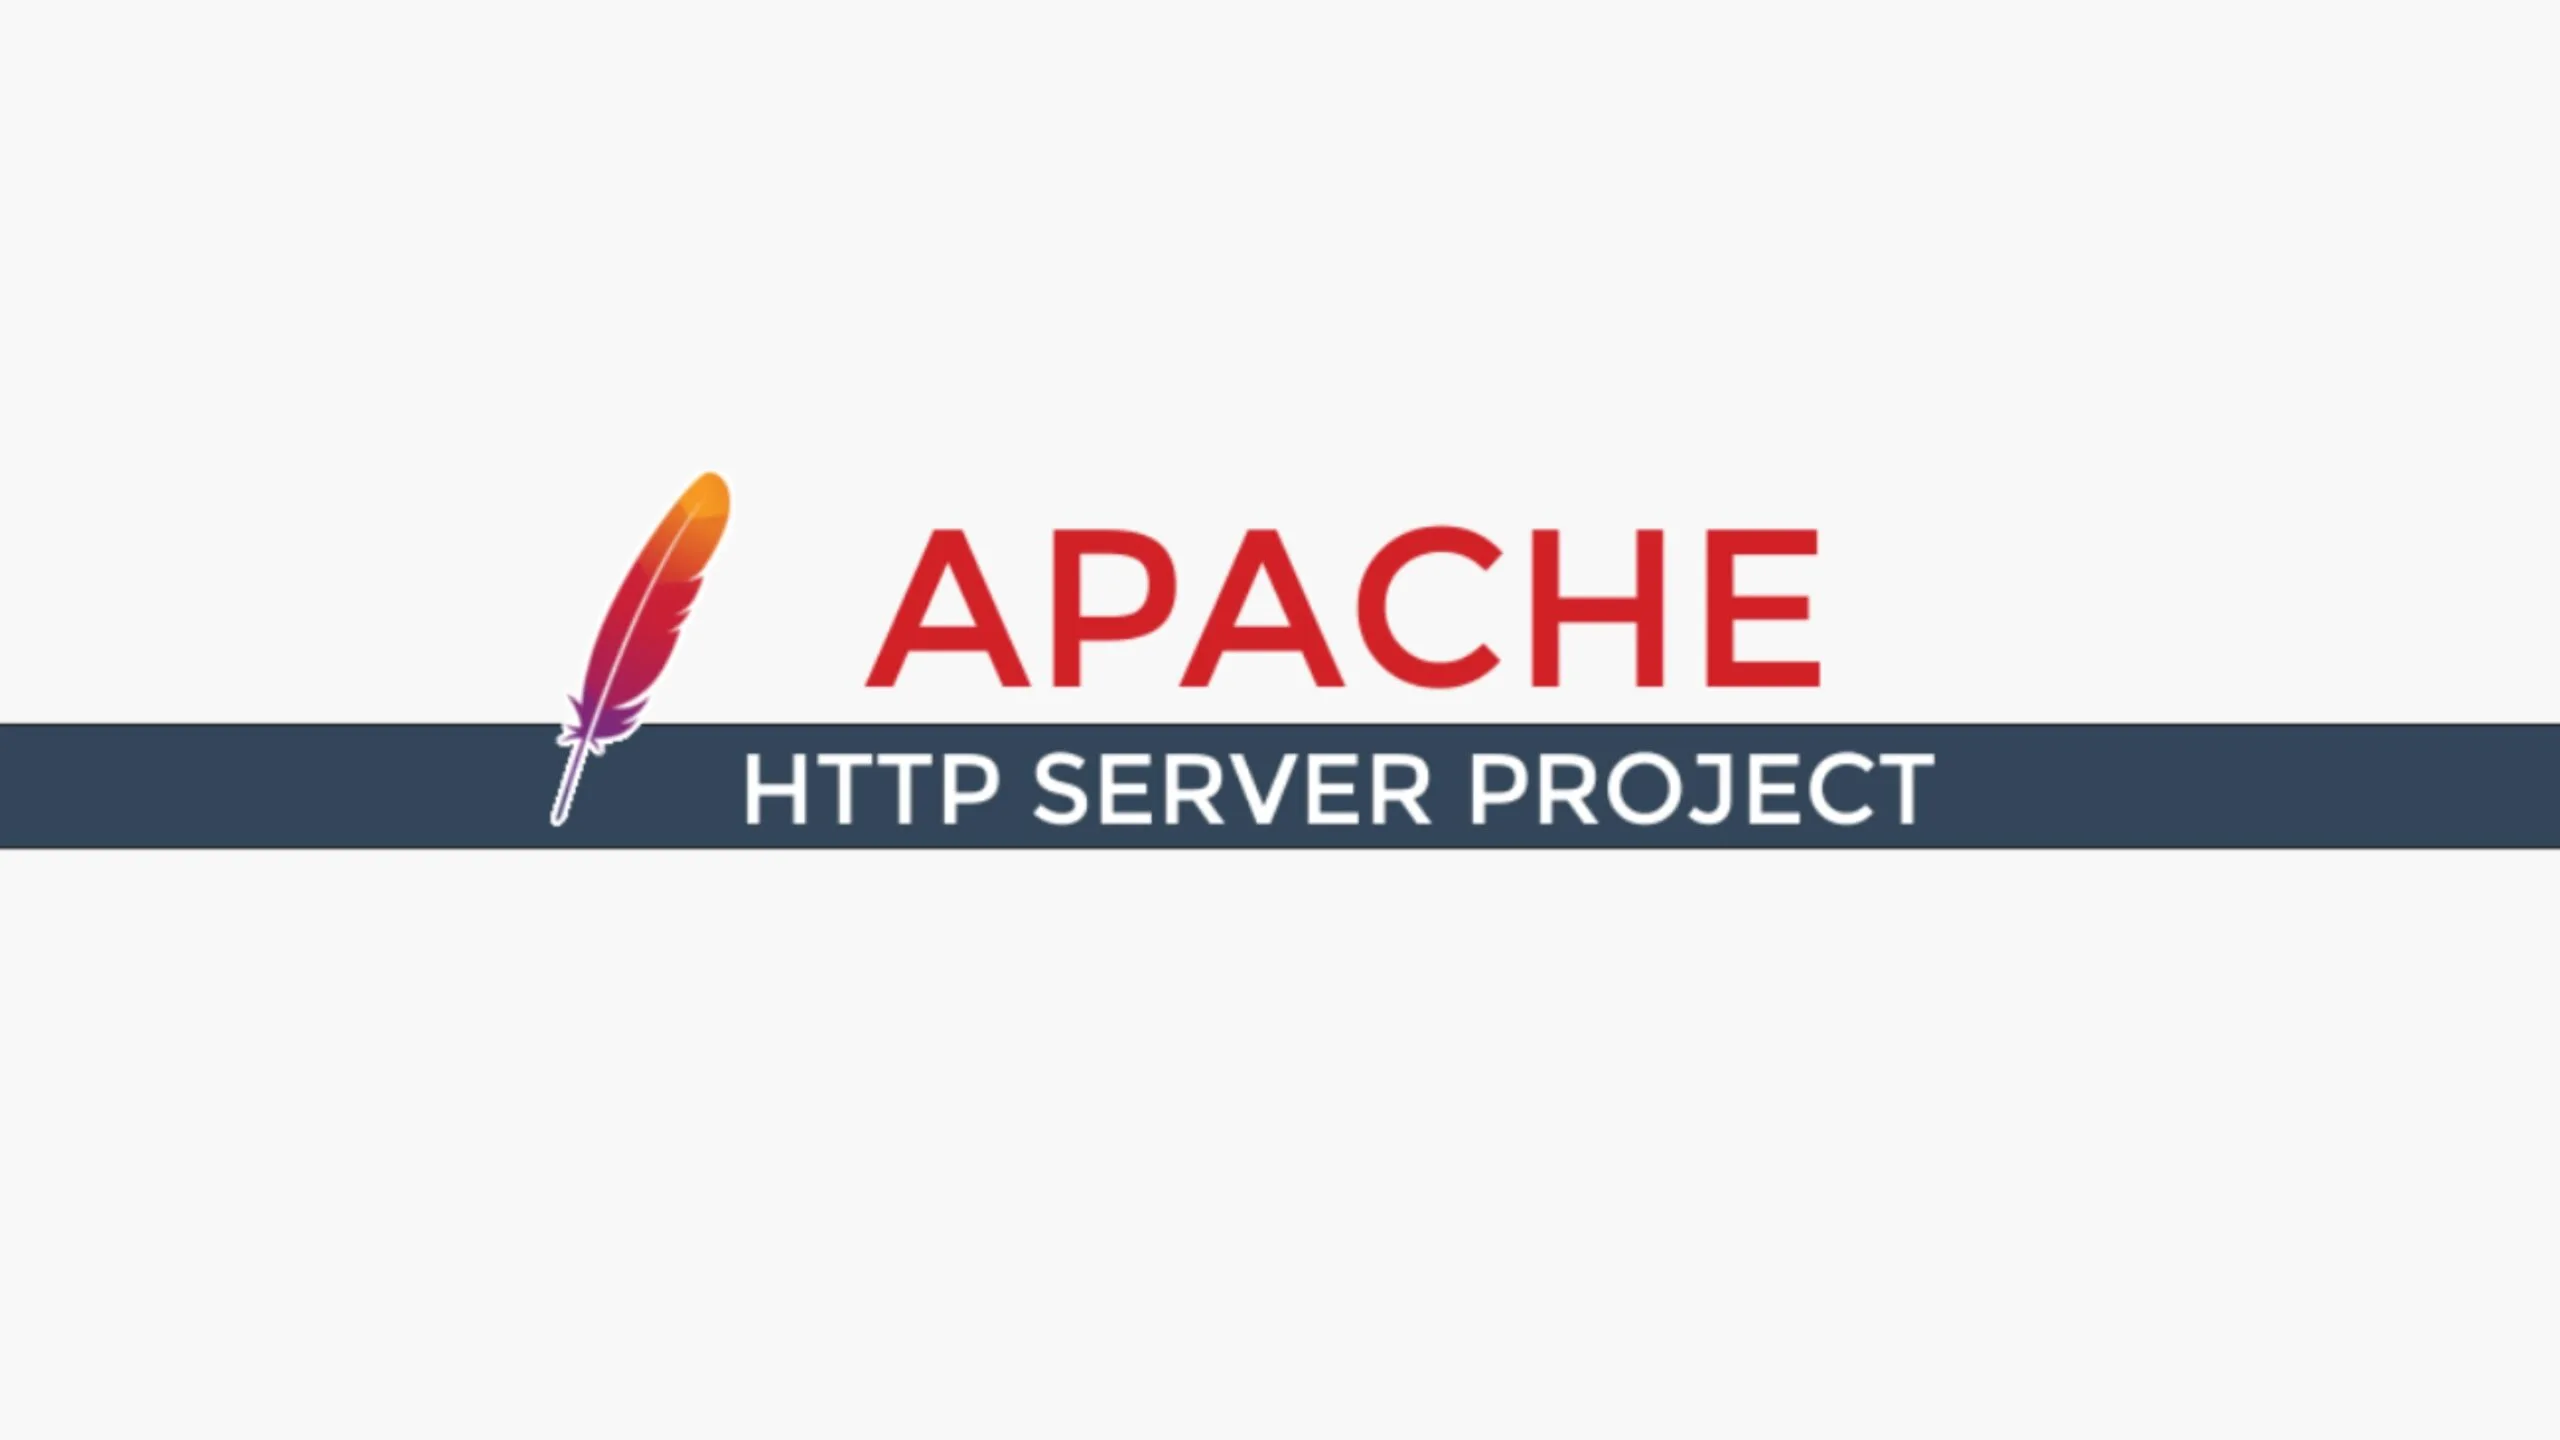 Imagem com a logomarca do Apache com fundo branco